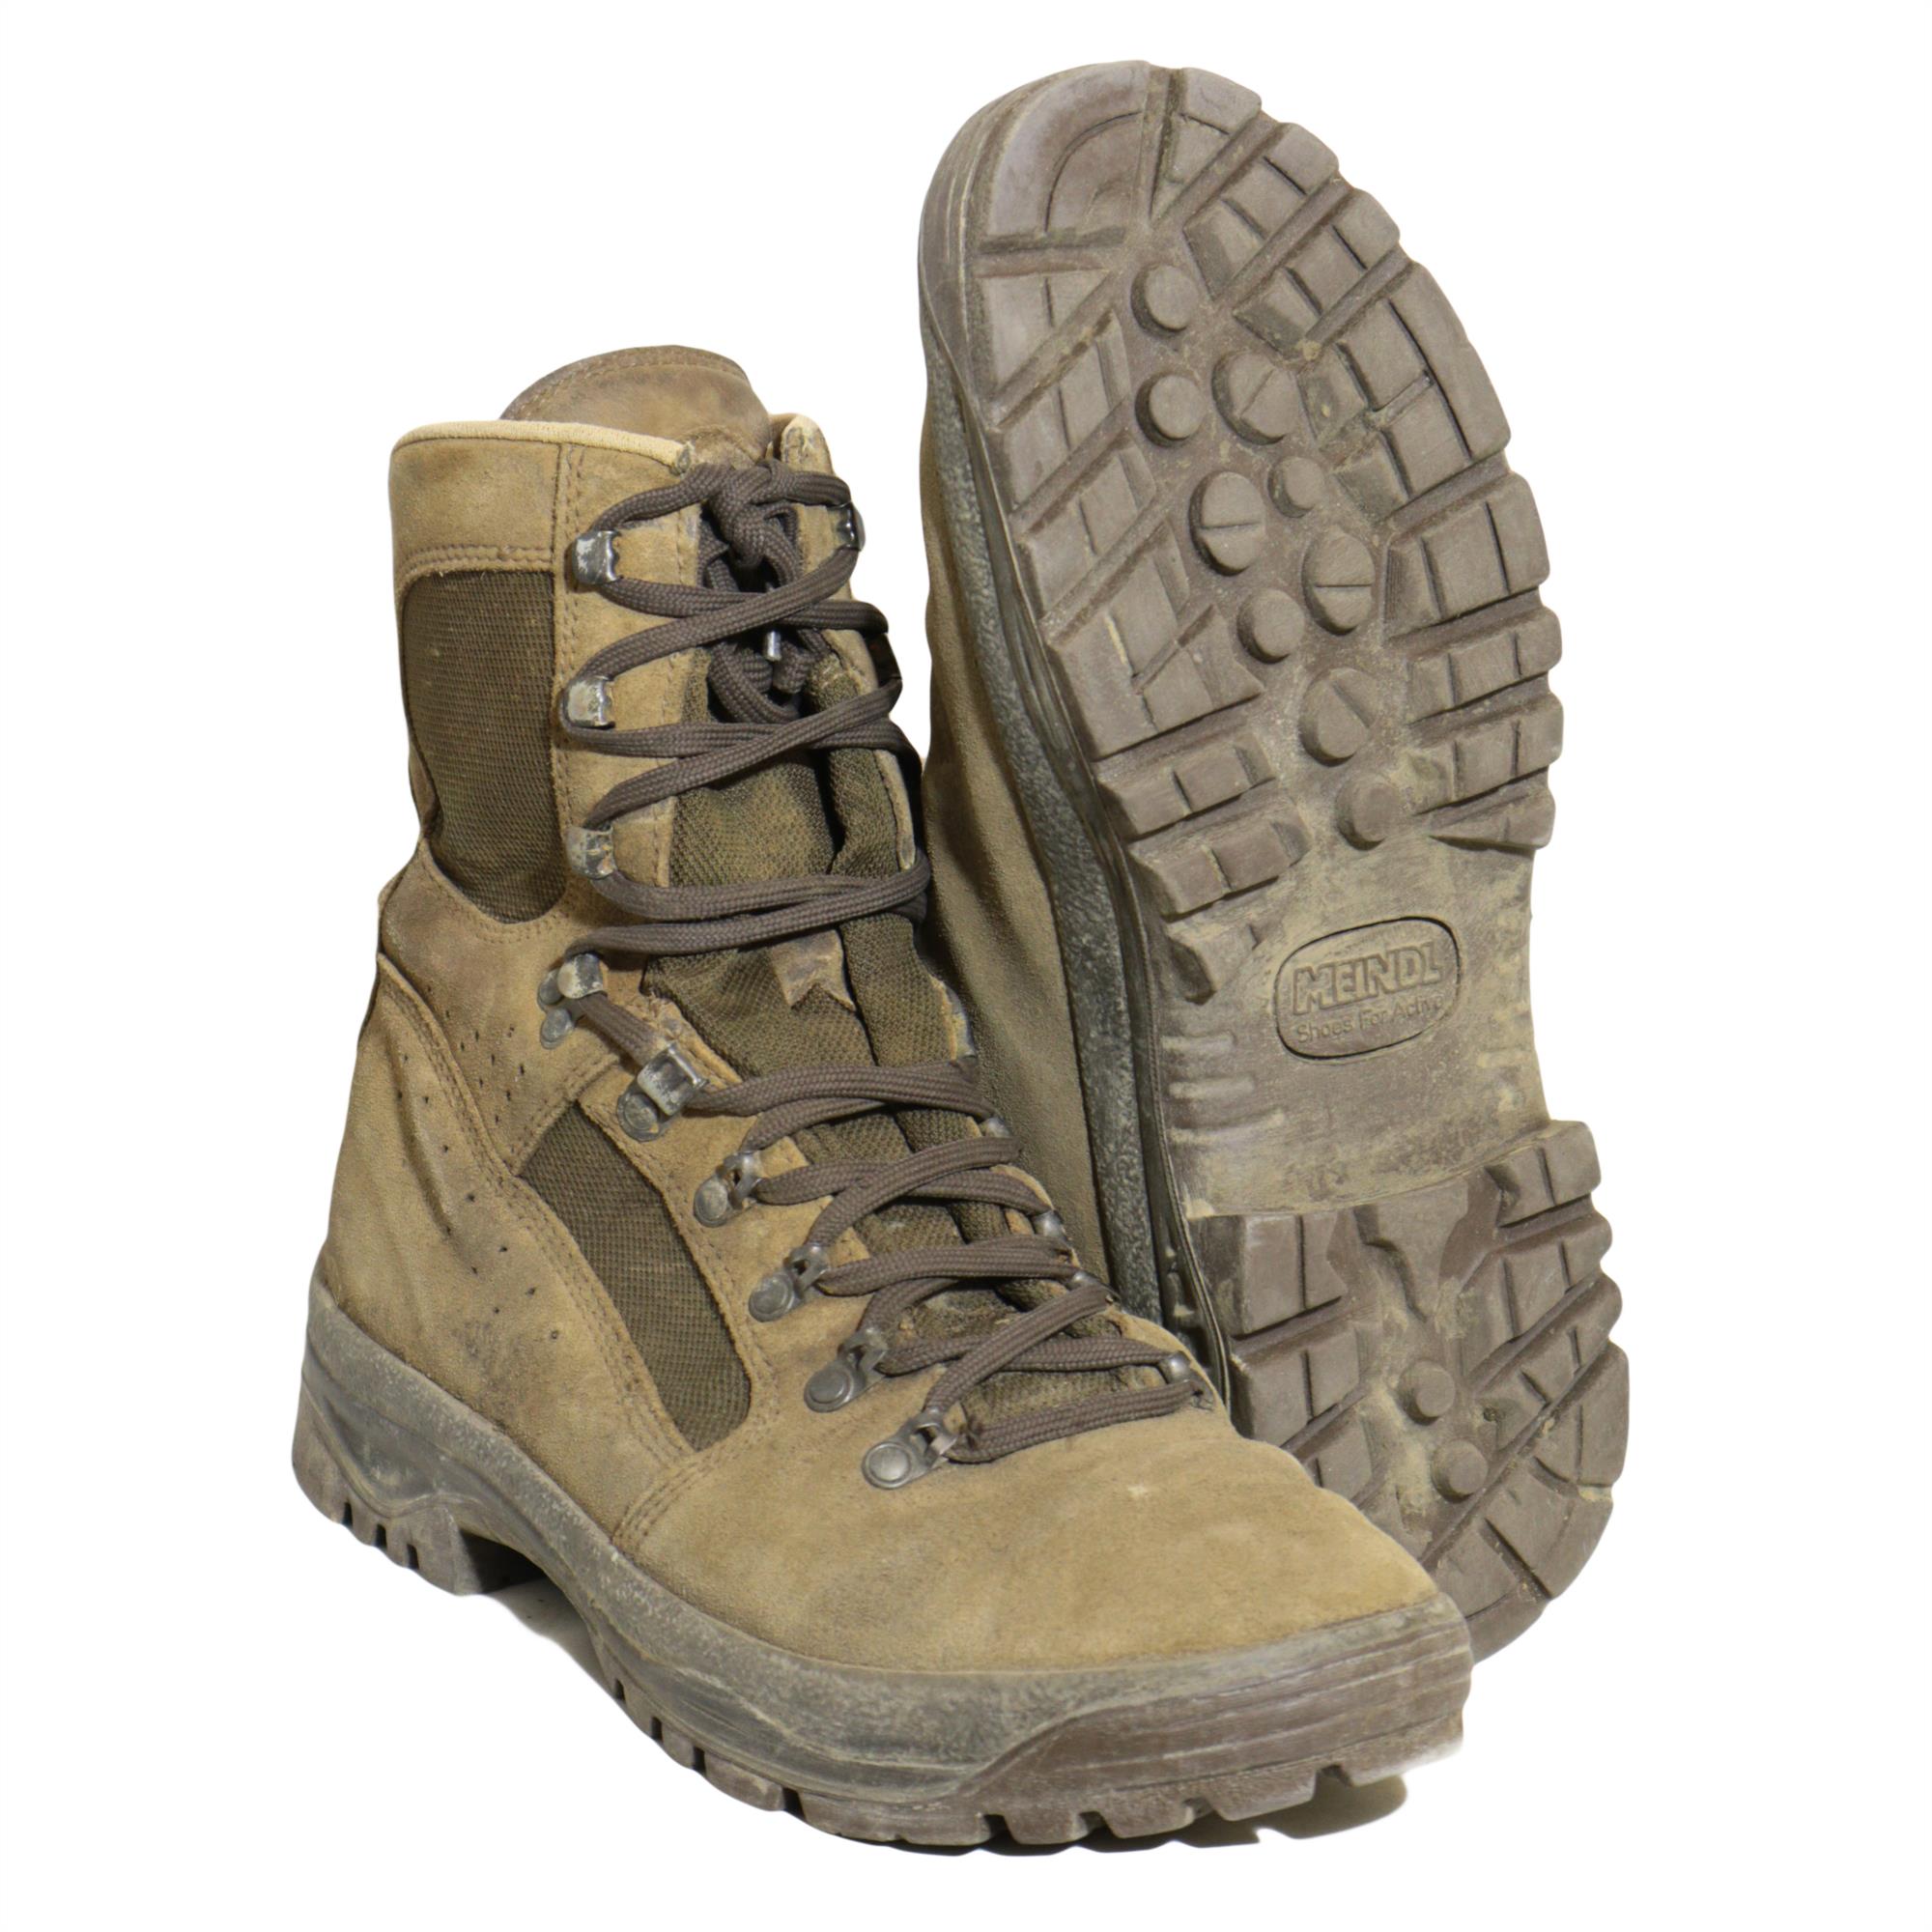 Combat boots rust фото 85